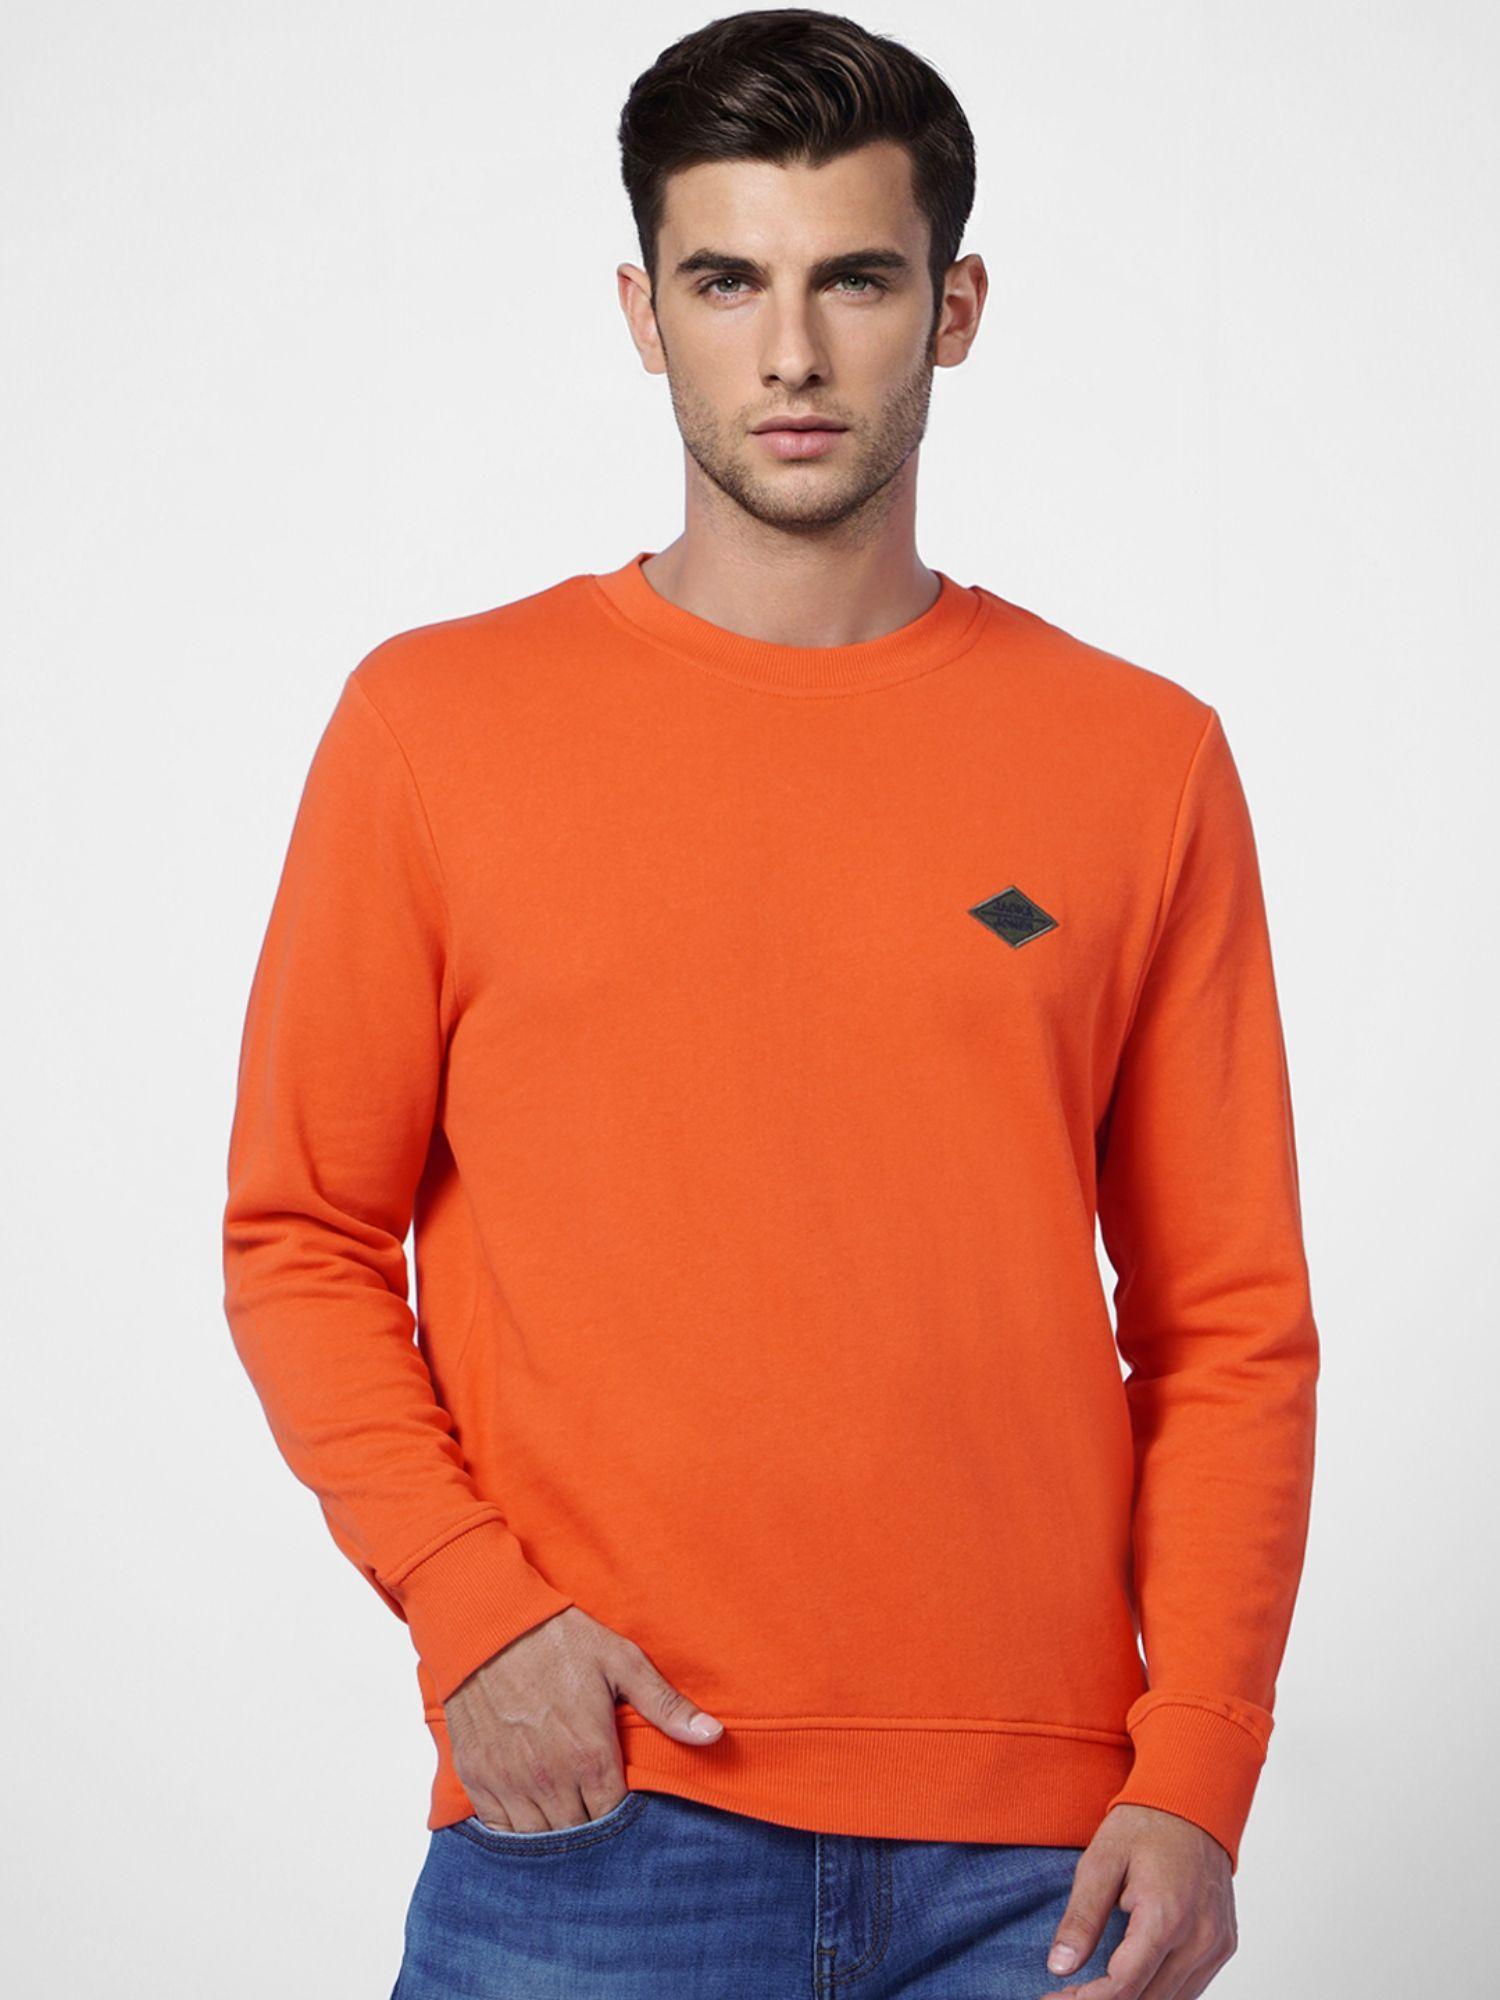 men-solid-orange-sweatshirt